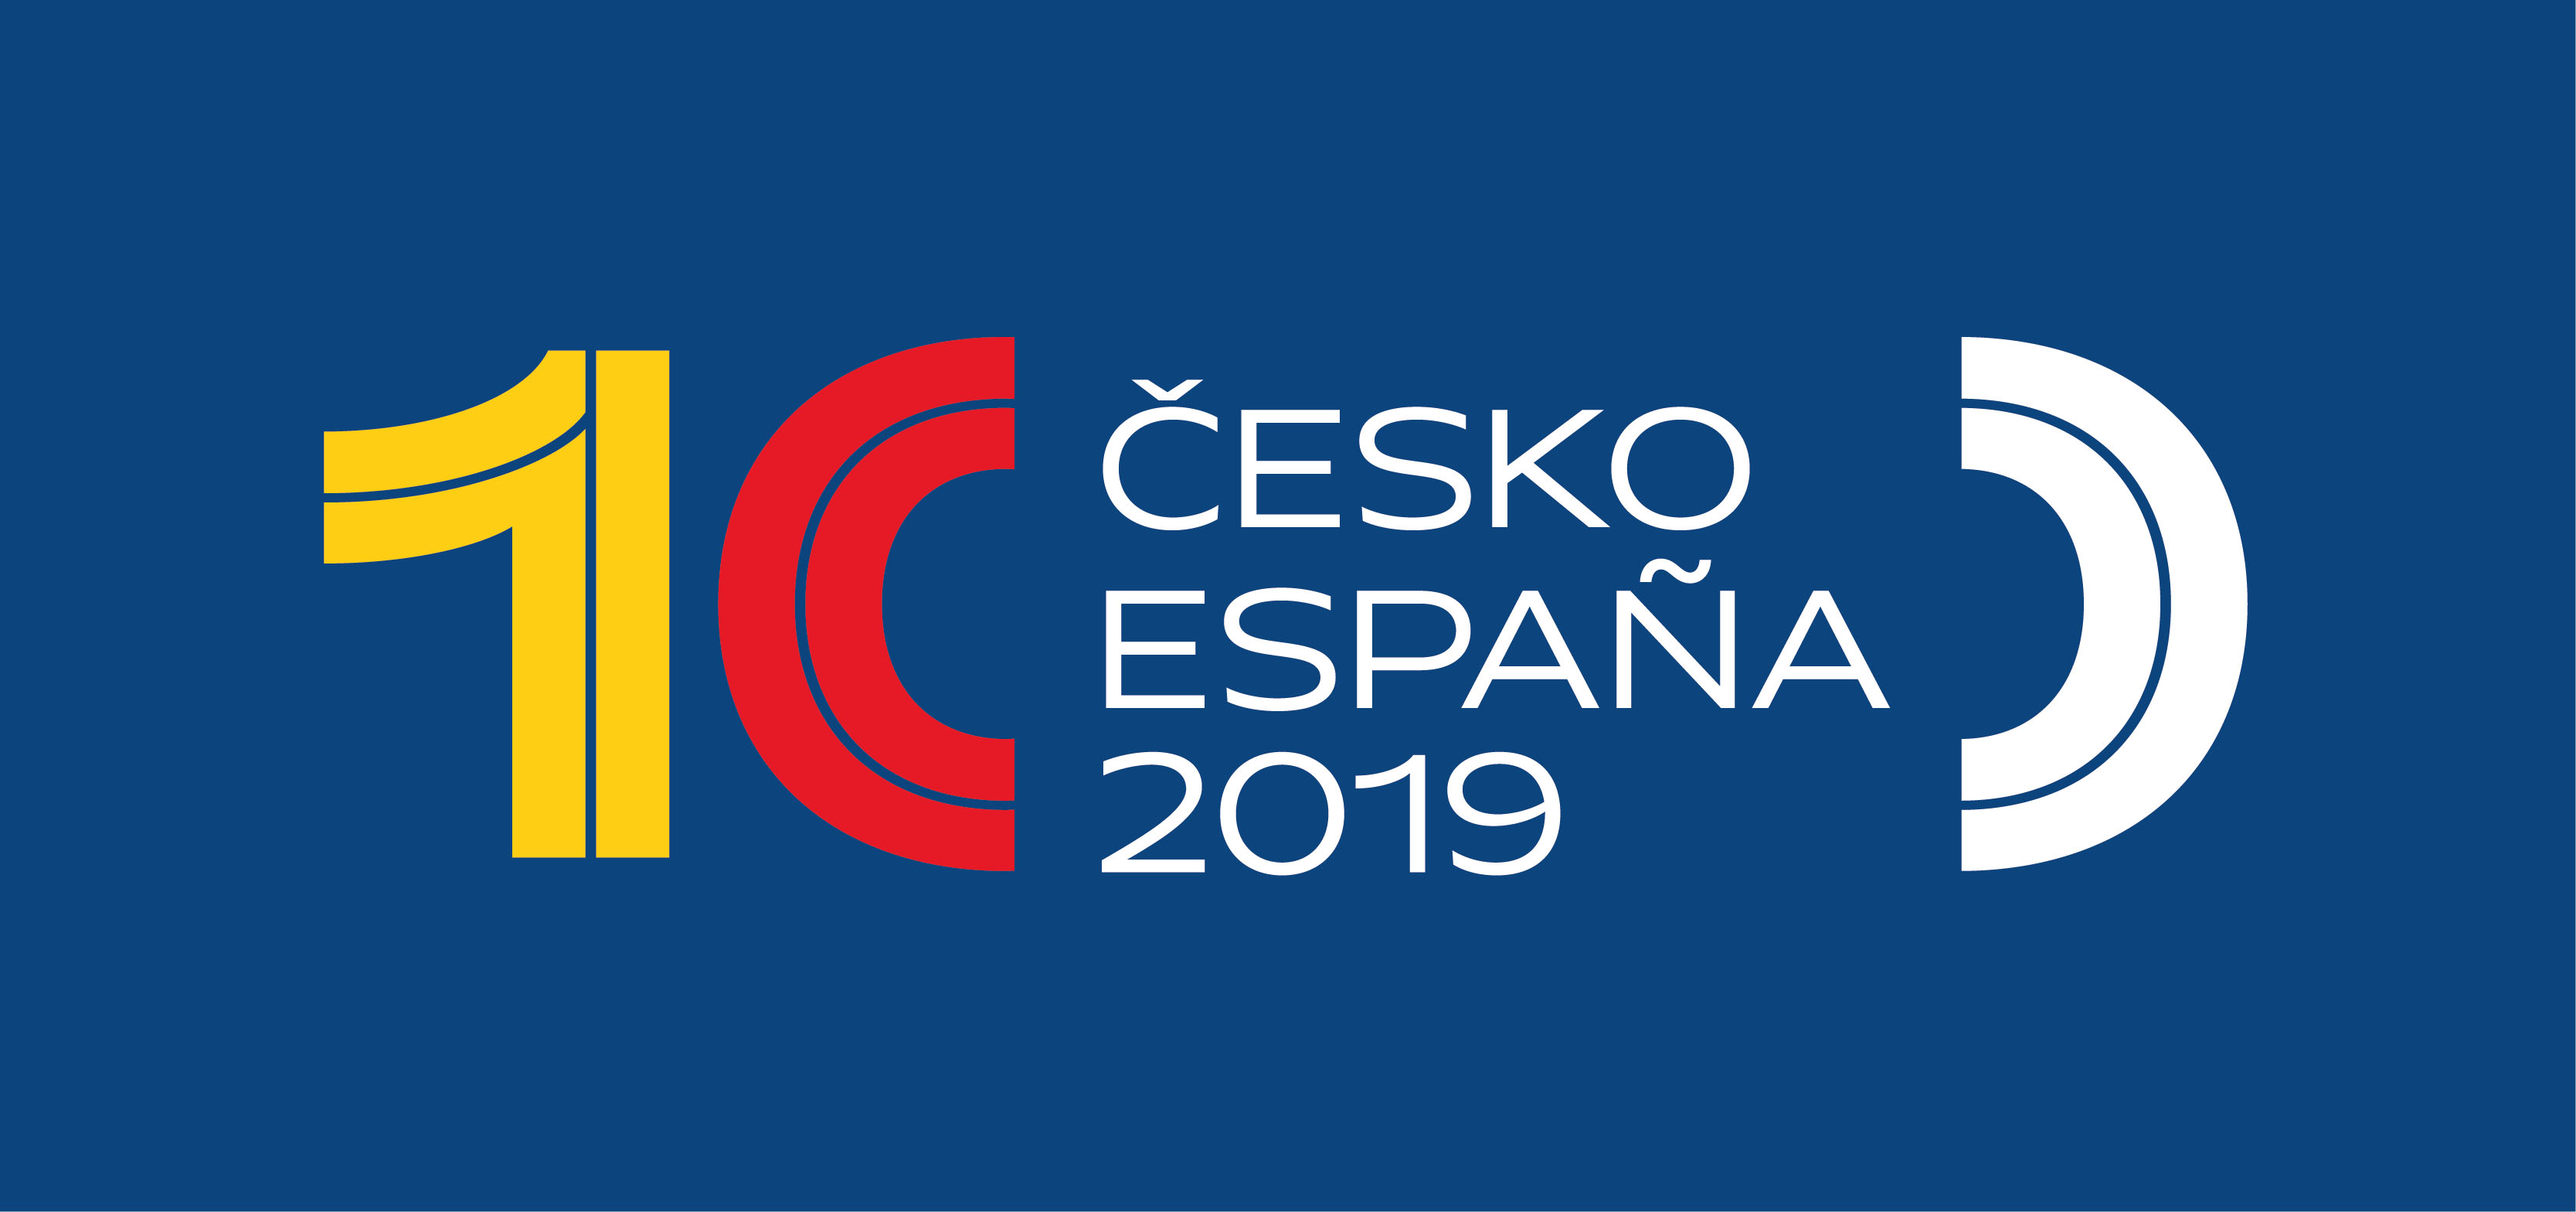 Transiciones a la democracia en España y Checoslovaquia/República Checa